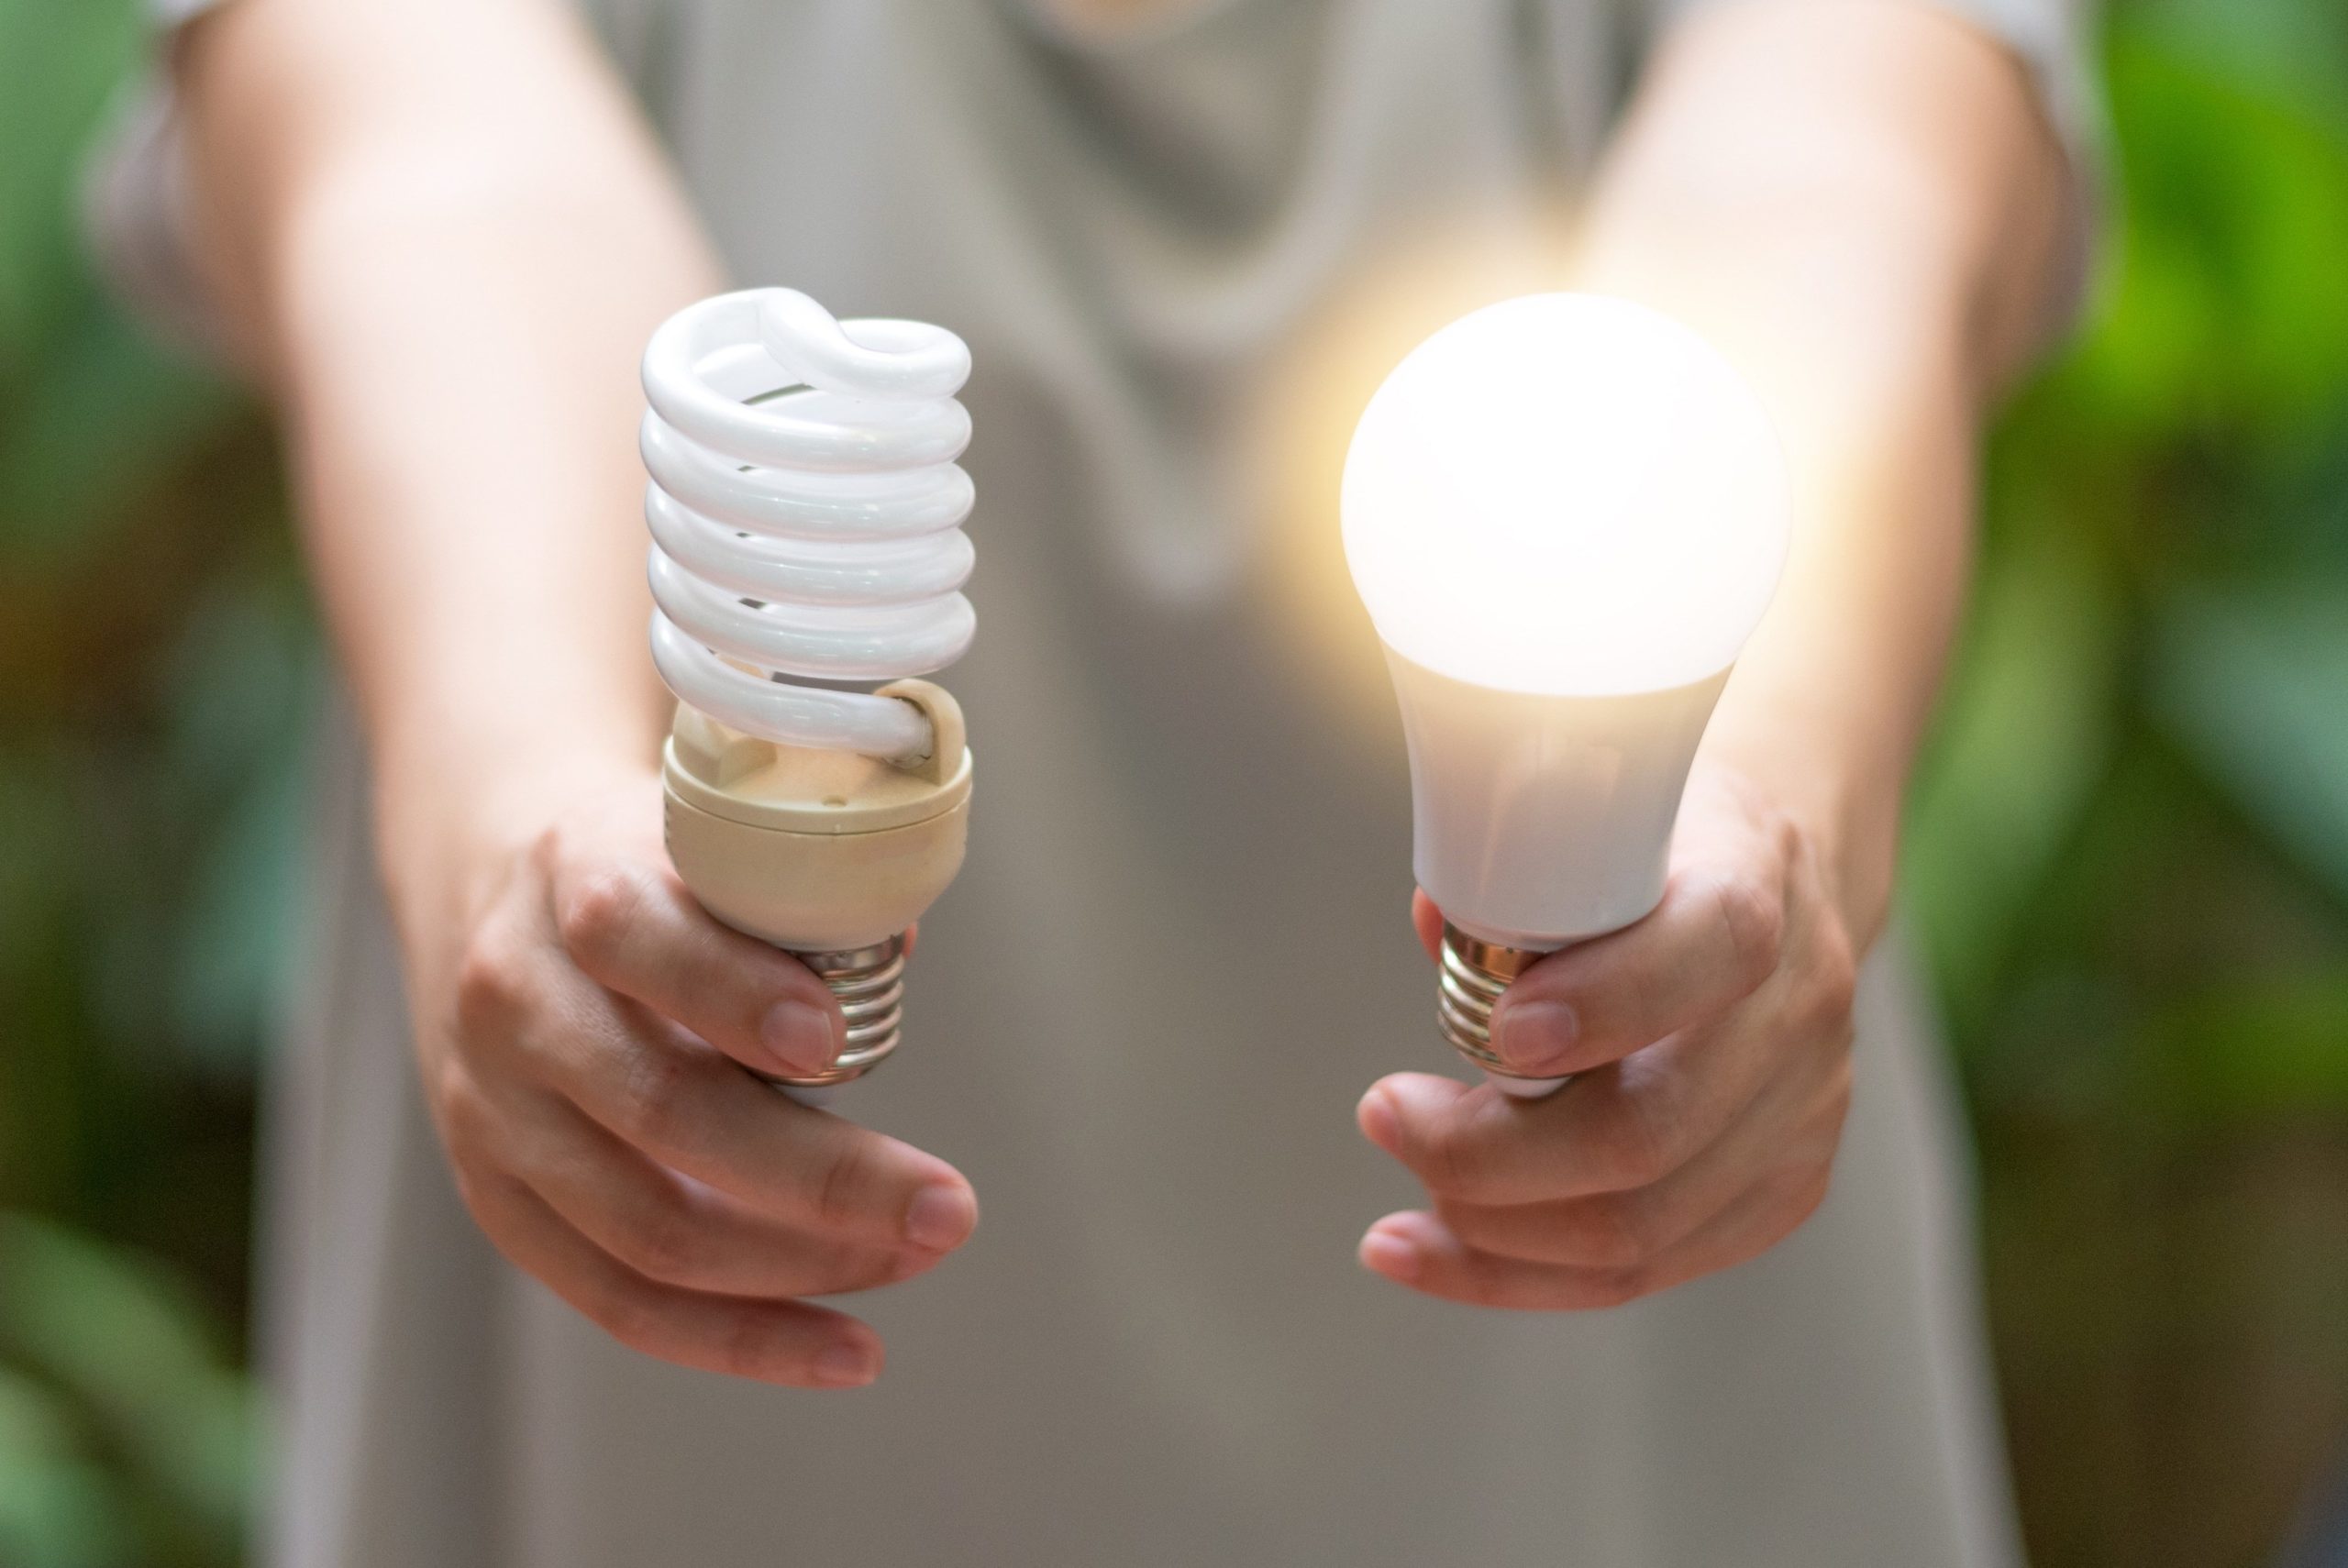 Hva er fordelene med LED-lamper fremfor energisparende lamper?